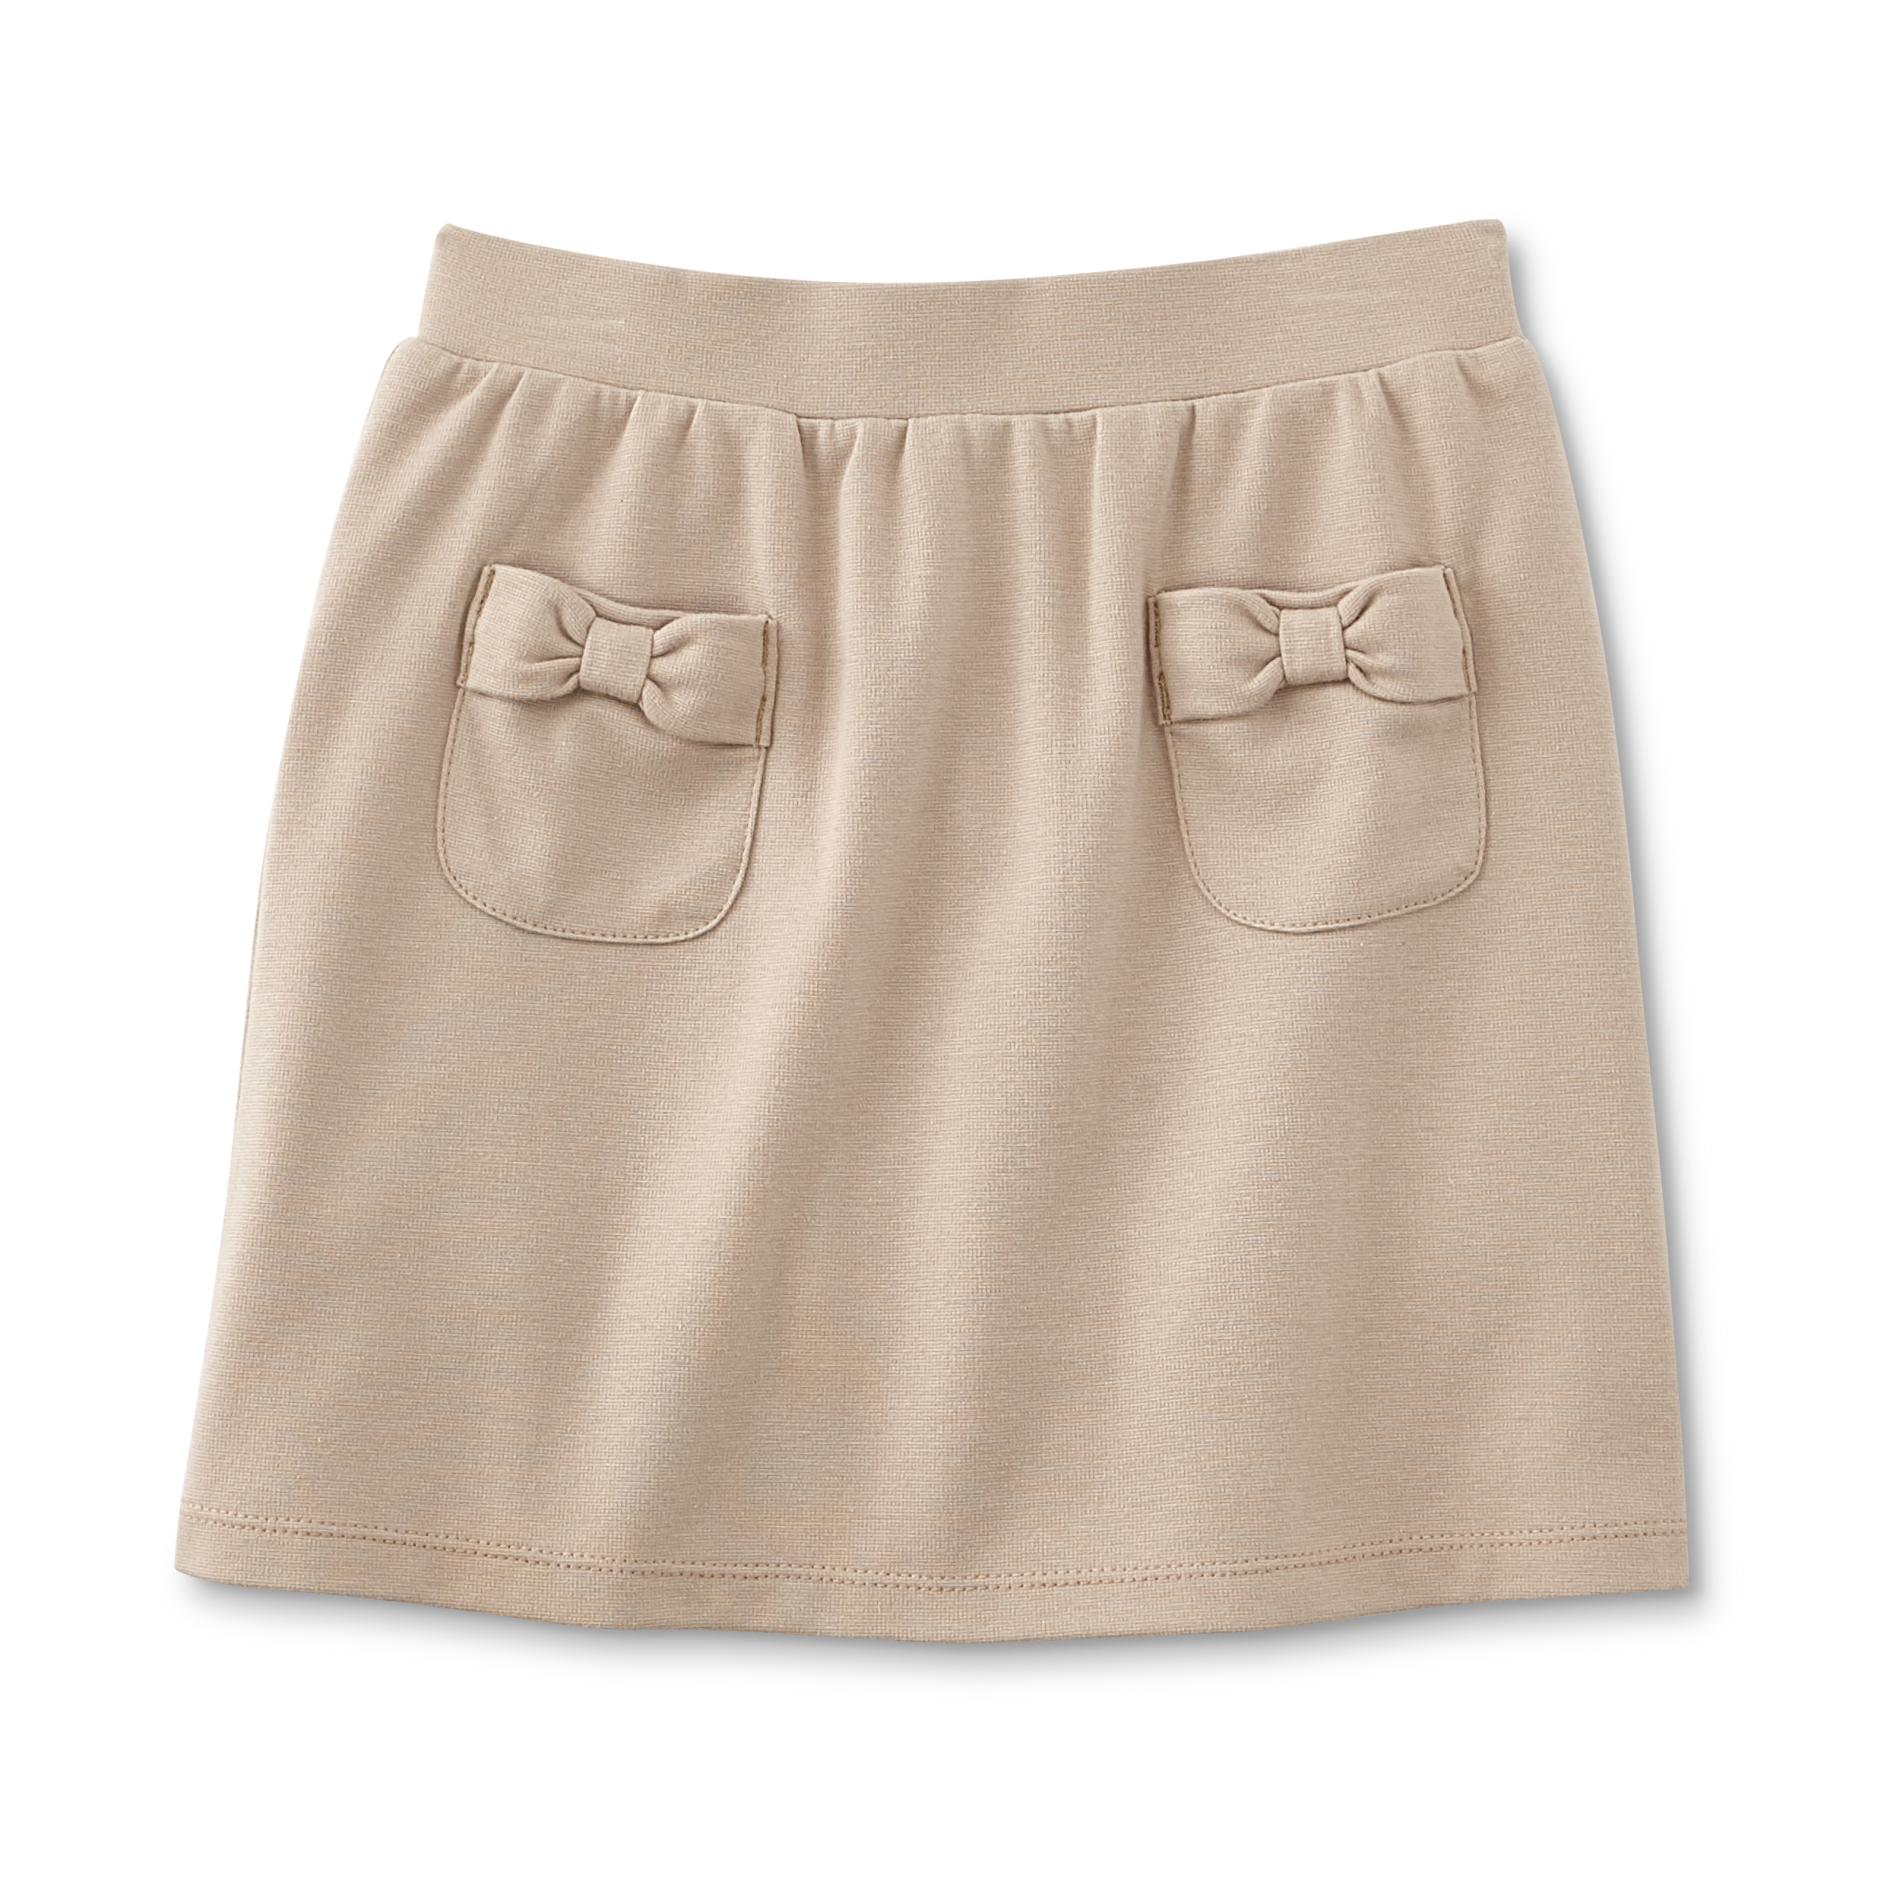 U.S. Polo Assn. Girls' Knit Skirt